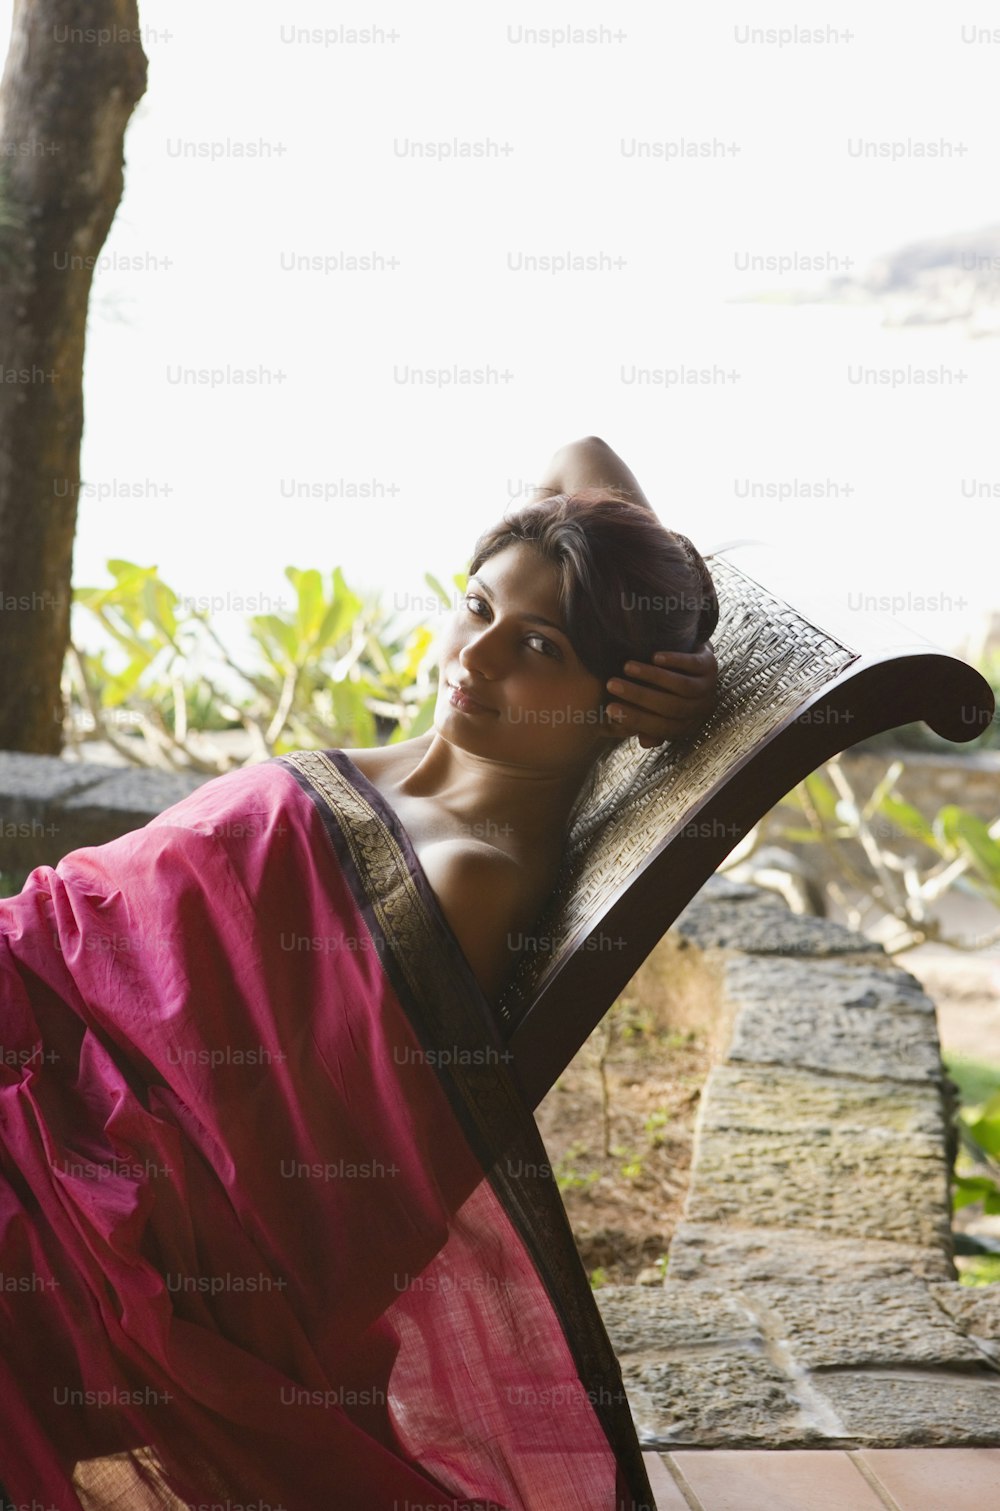 Una donna in un sari rosso sdraiata su una sedia di legno